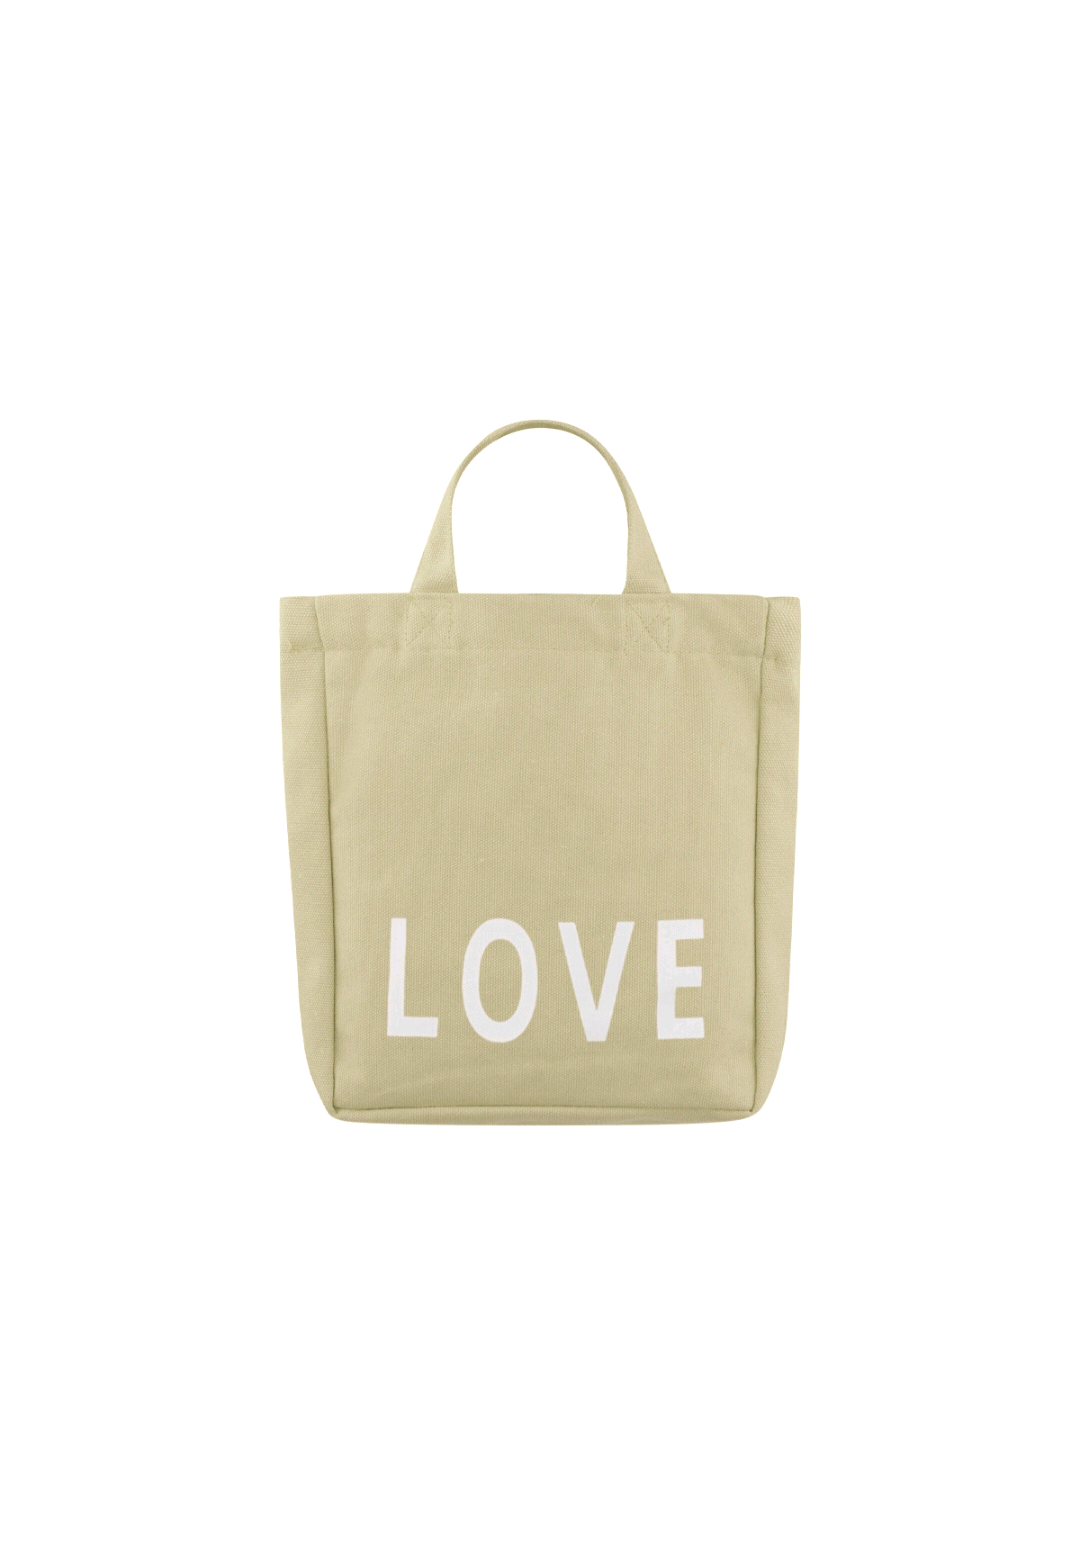 Little love bag